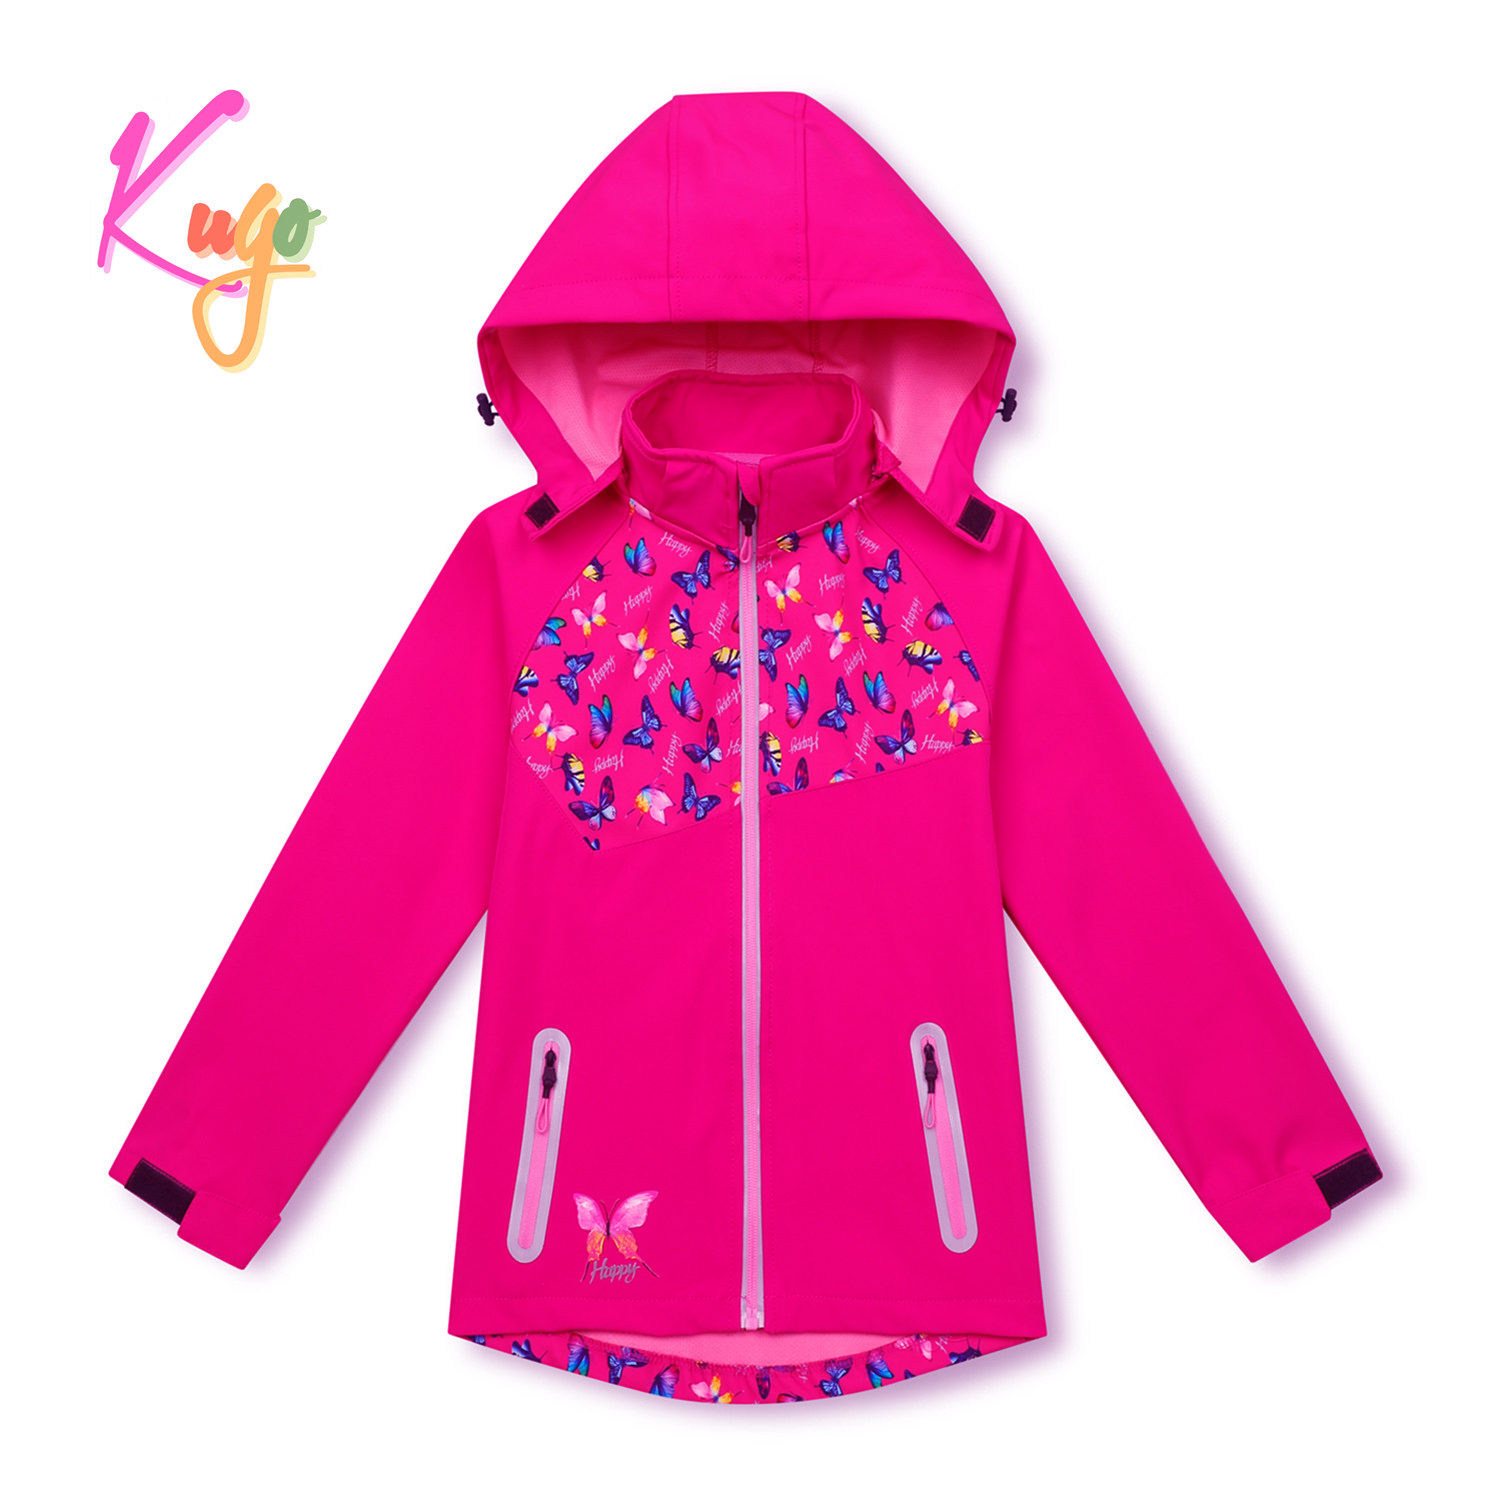 Dívčí softshellová bunda - KUGO HK3123, růžová Barva: Růžová, Velikost: 128